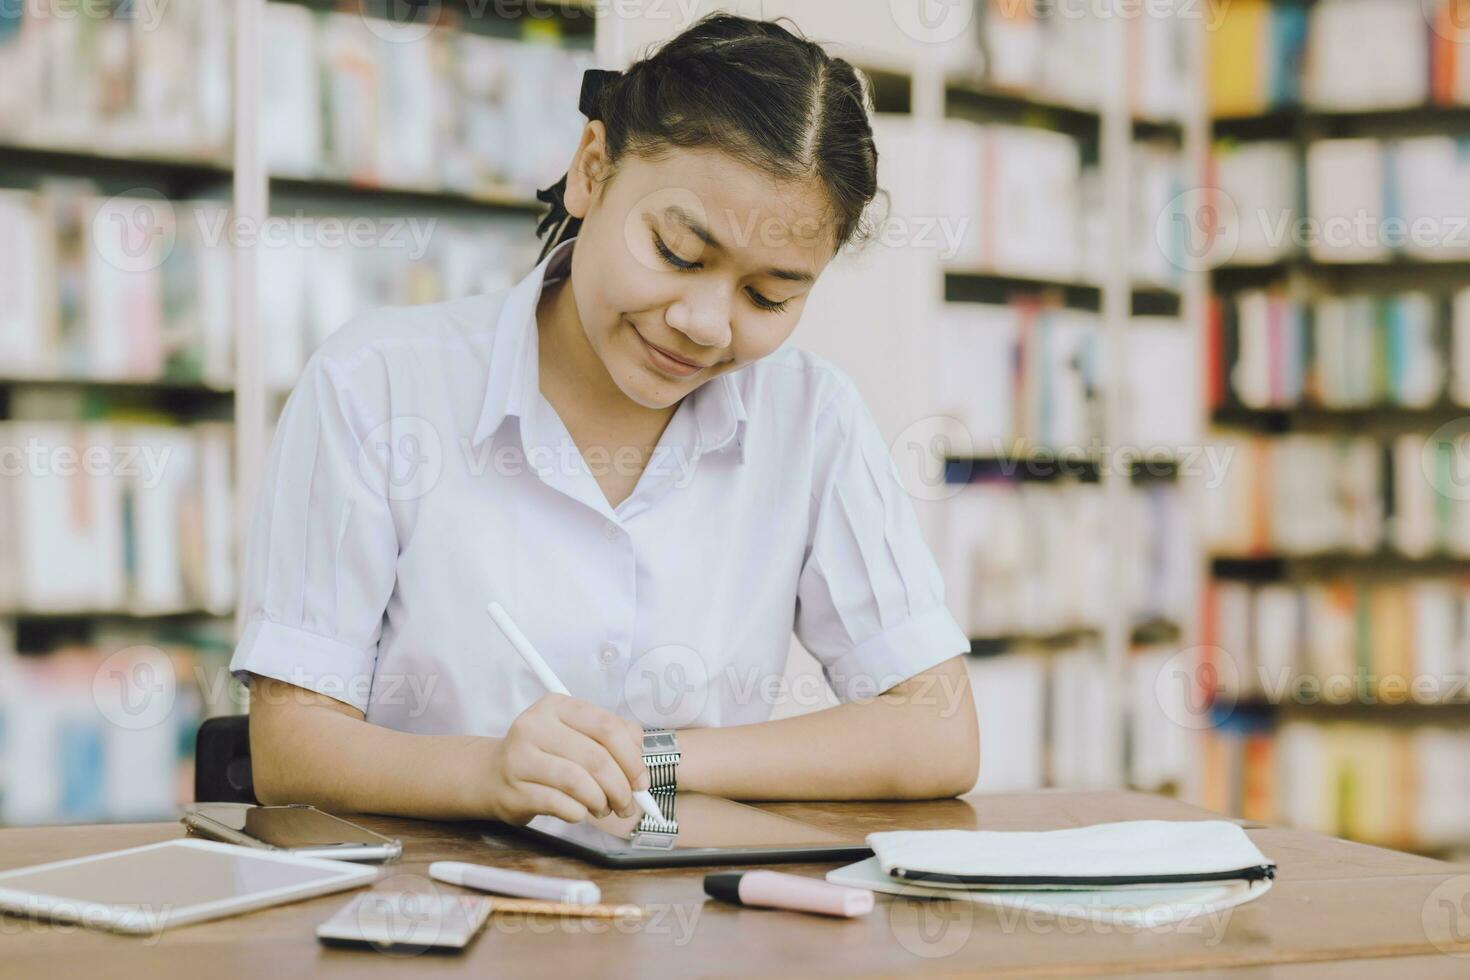 jovem escola uniforme aluna adolescente Educação Aprendendo estudando livro dentro biblioteca estante de livros fundo. foto